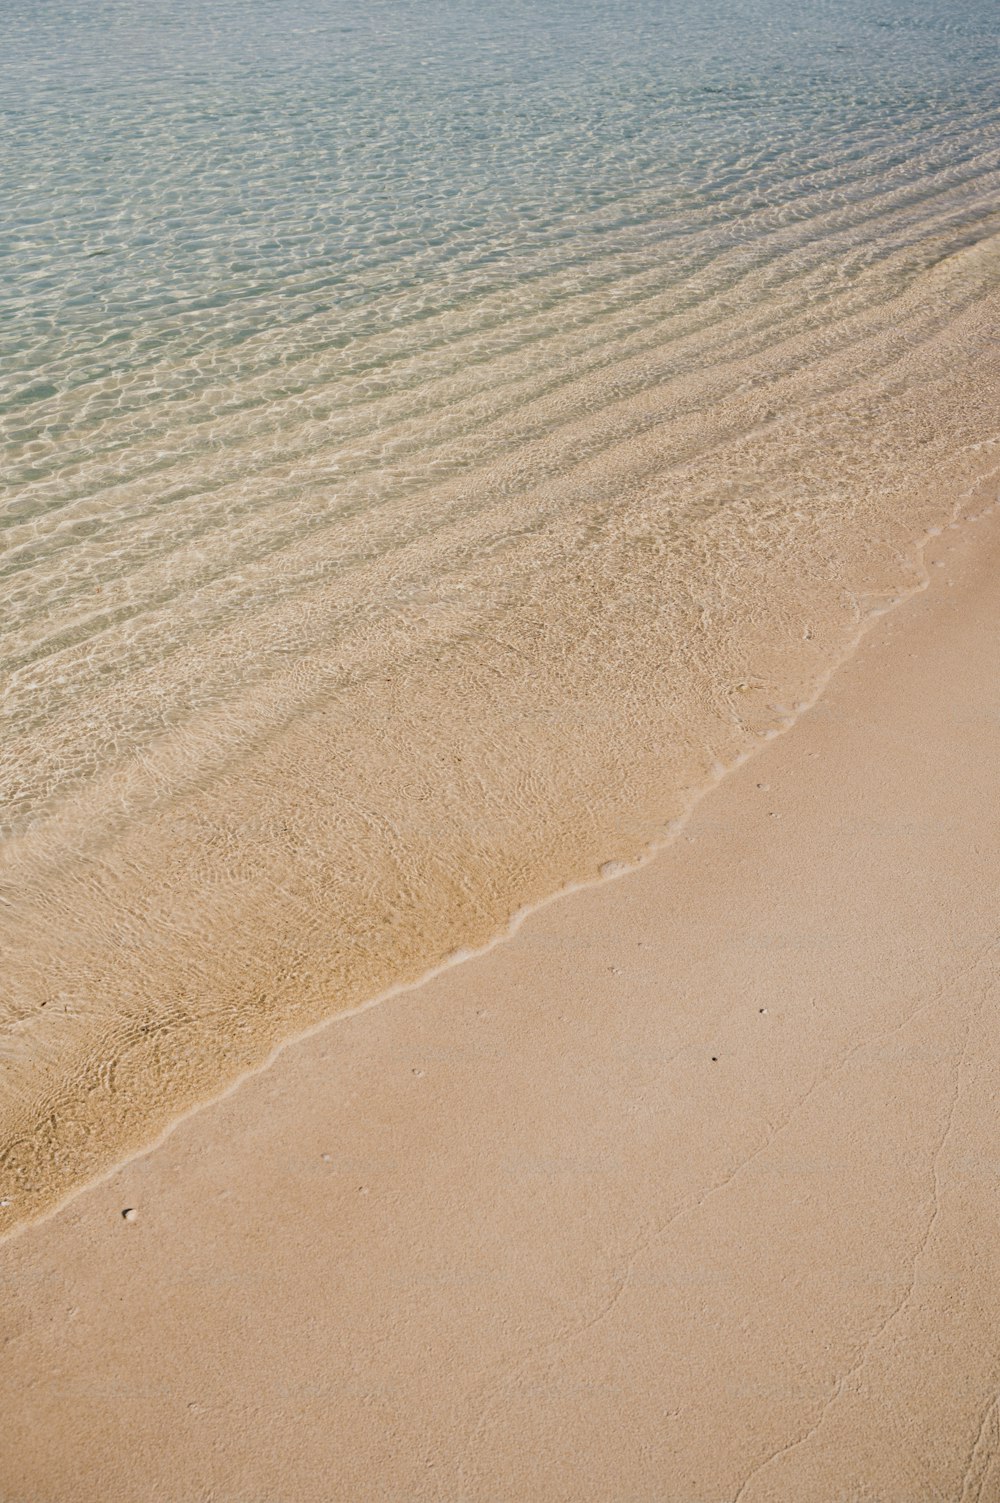 水域を背景にした砂浜